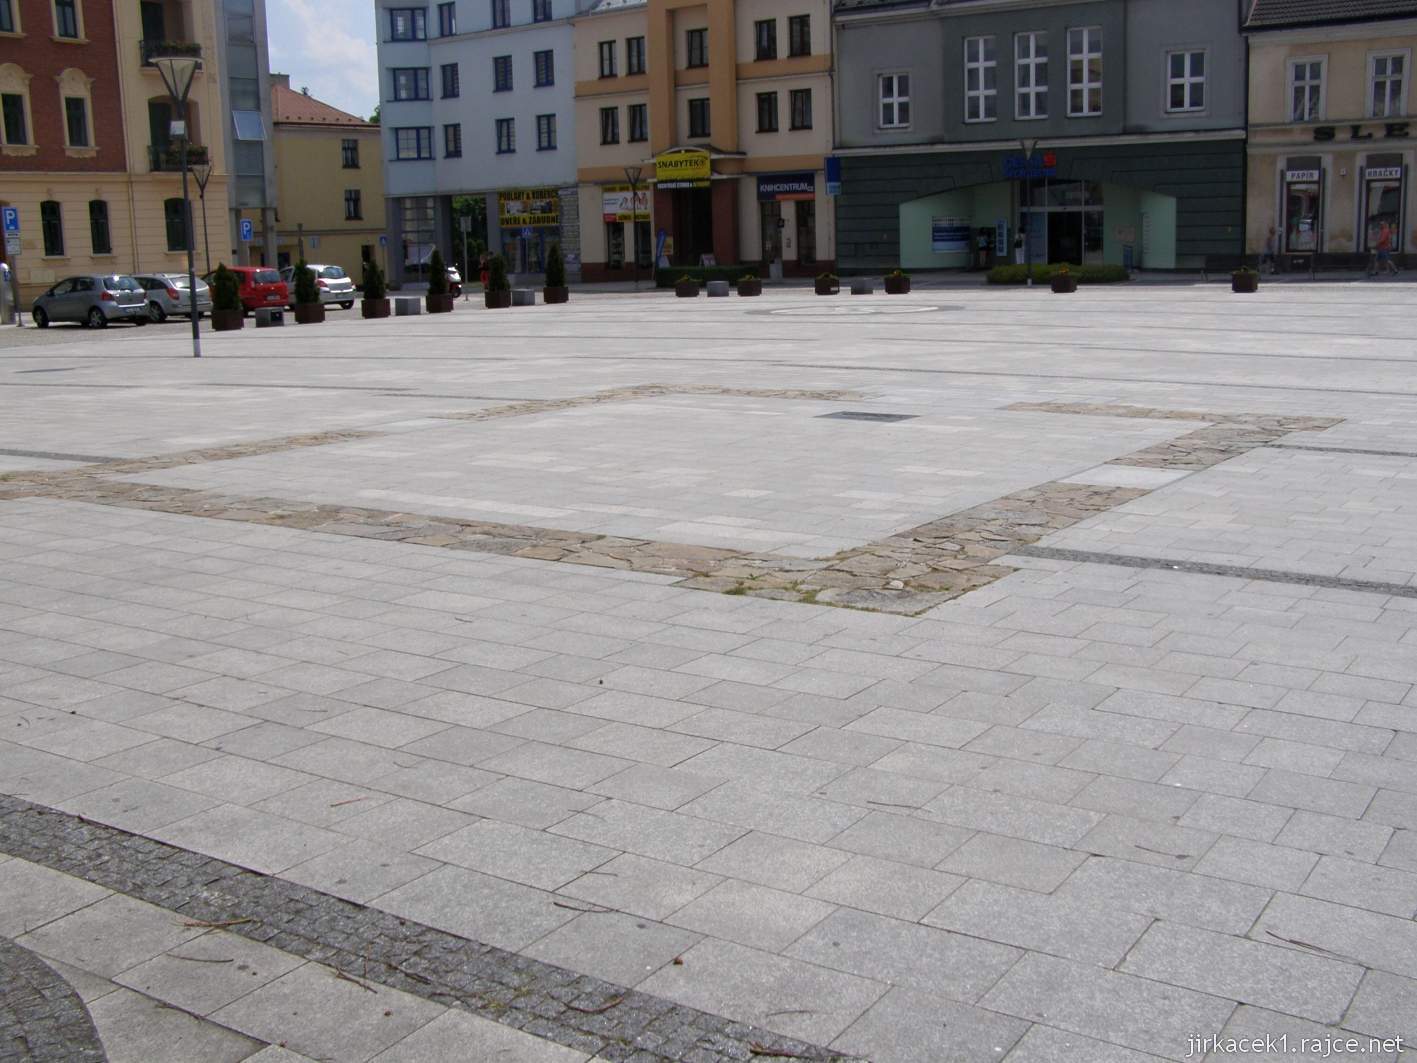 10 - Hlučín - Mírové náměstí 09 - obrysy bývalé kaple sv. Jana Nepomuckého a vzadu studny ve středu náměstí